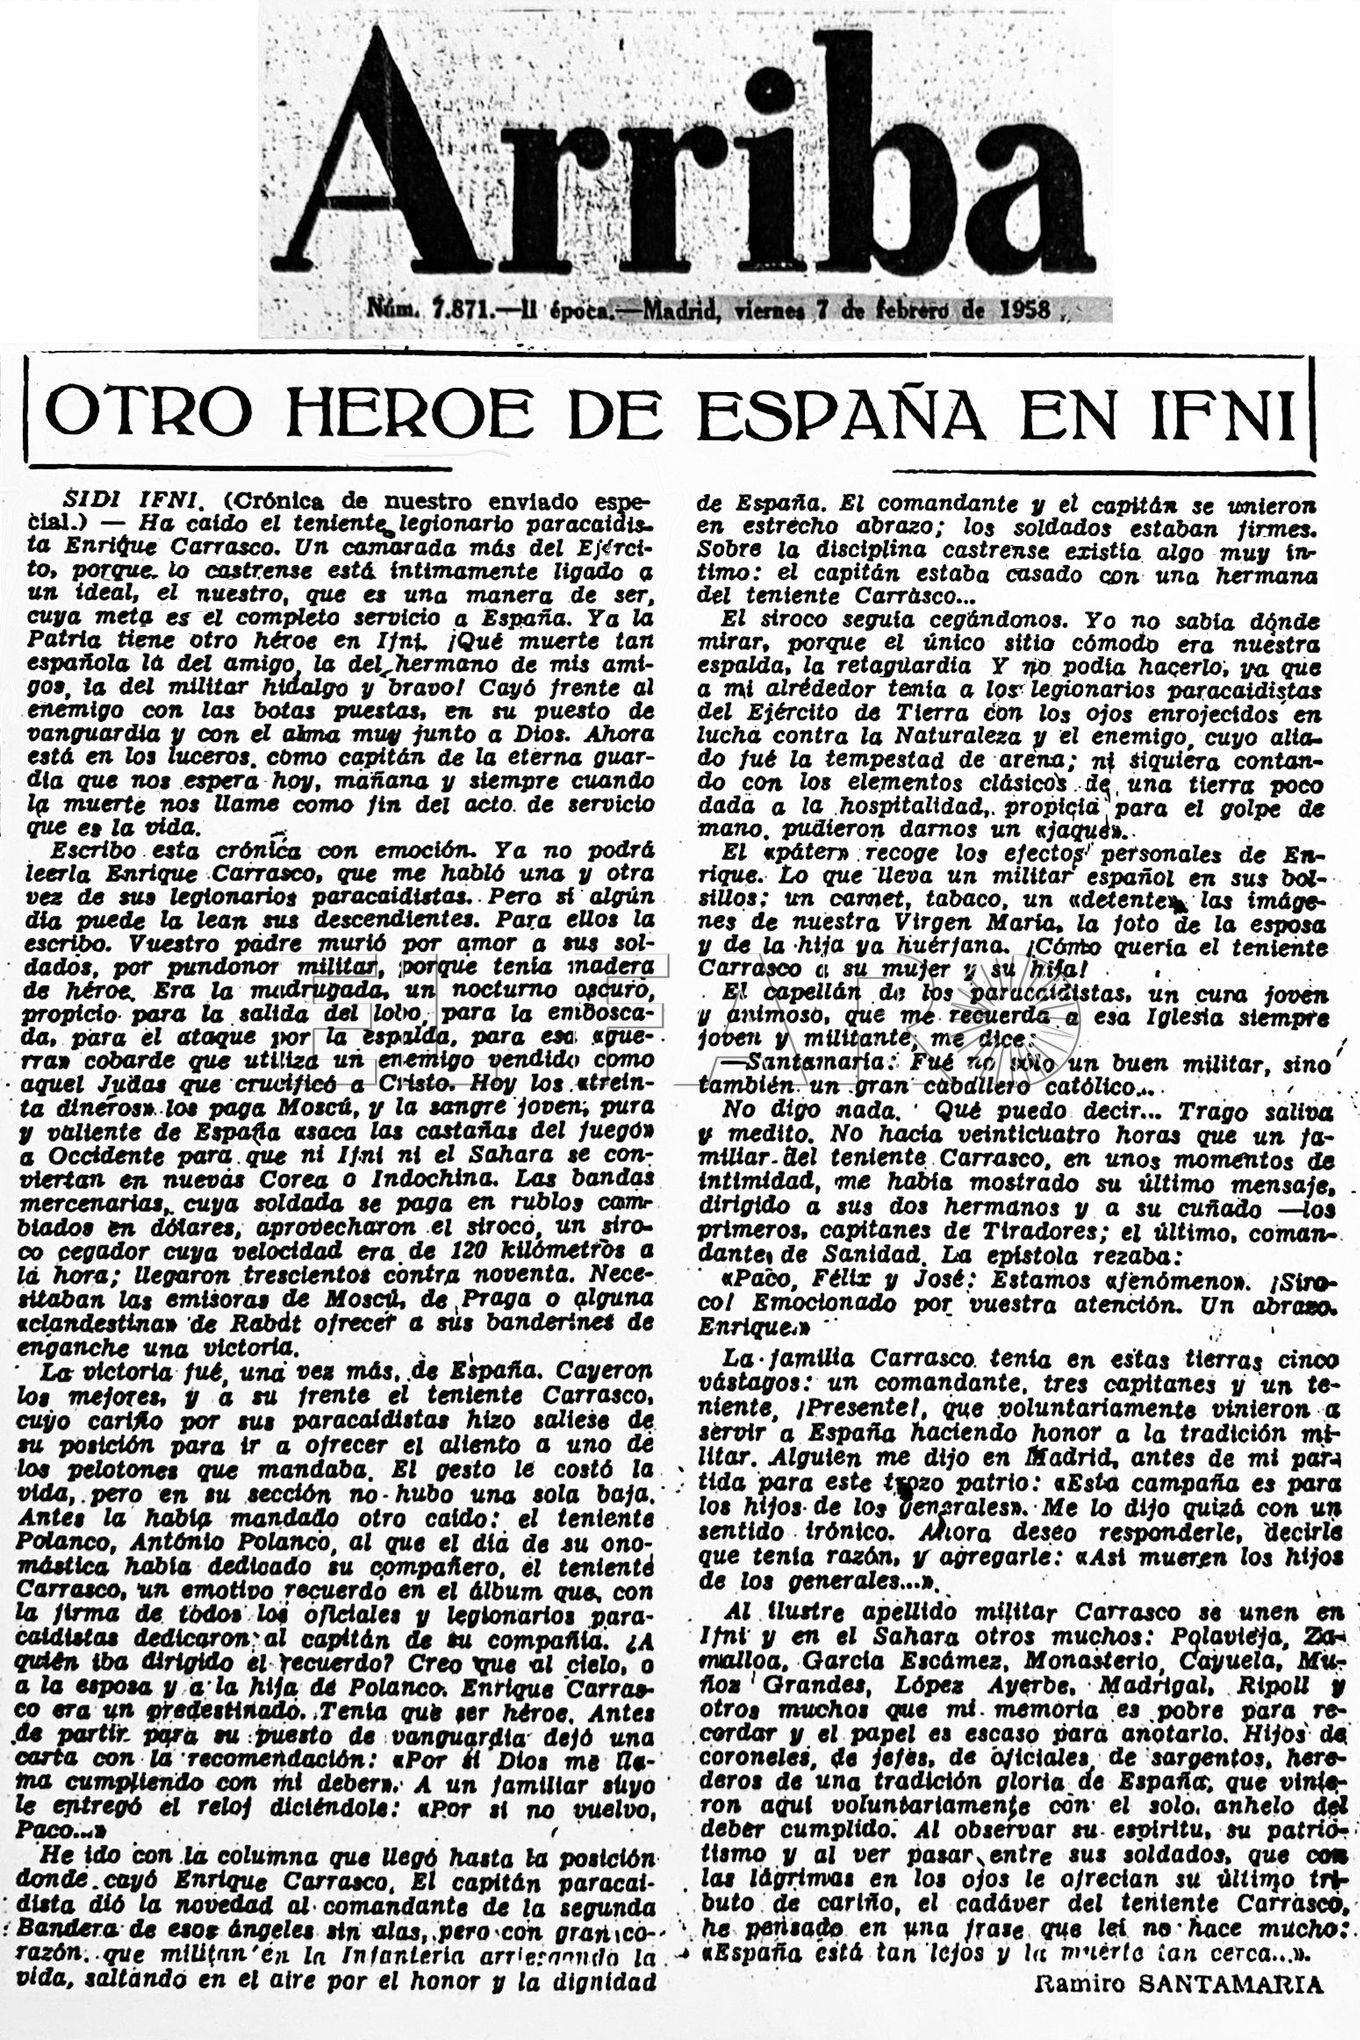 Crónica sobre la Guerra de Ifni publicada en el Diario Arriba, donde era corresponsal de guerra.